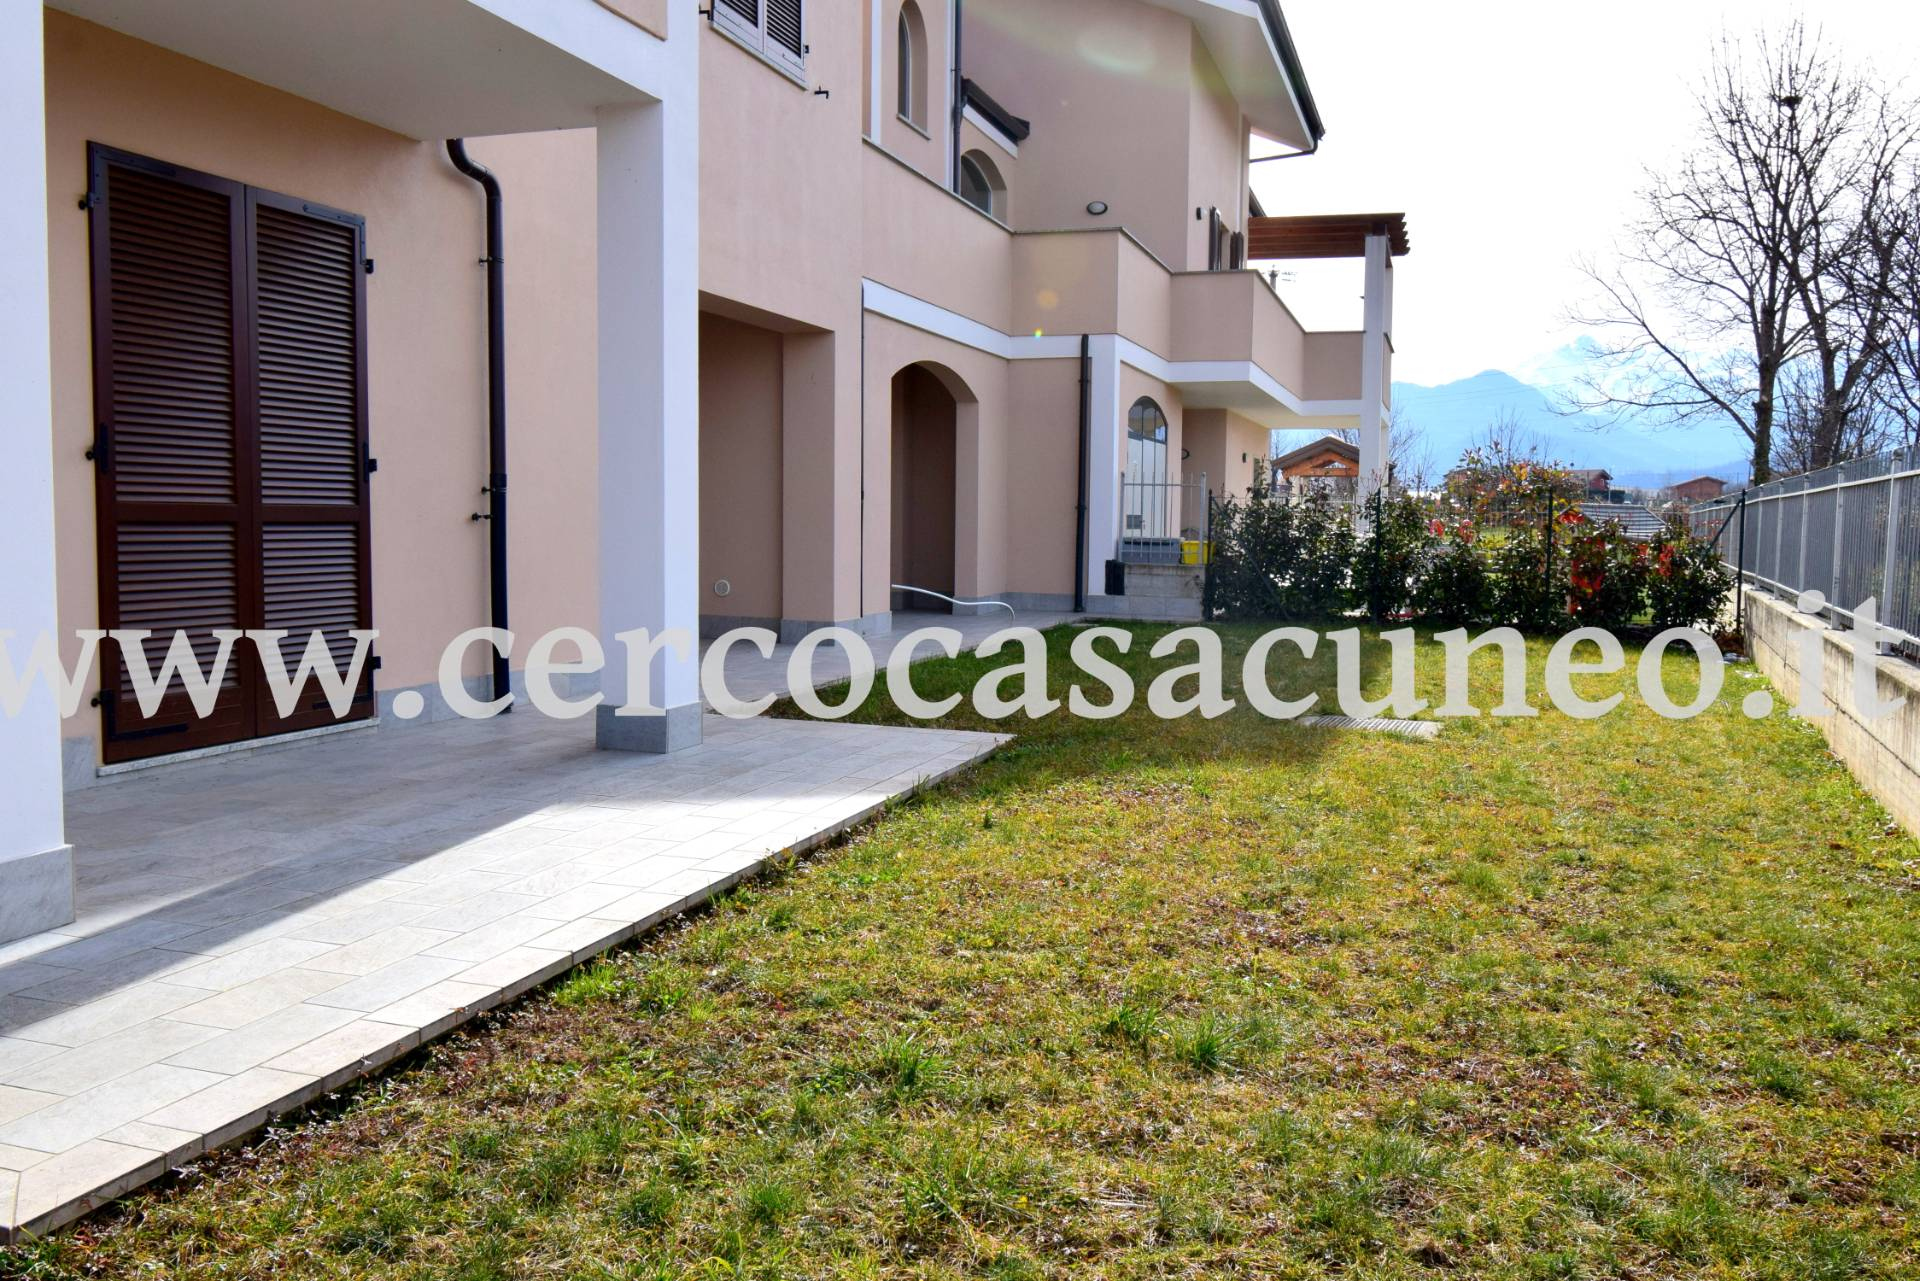 Appartamento in vendita a Vignolo, 4 locali, prezzo € 205.000 | CambioCasa.it